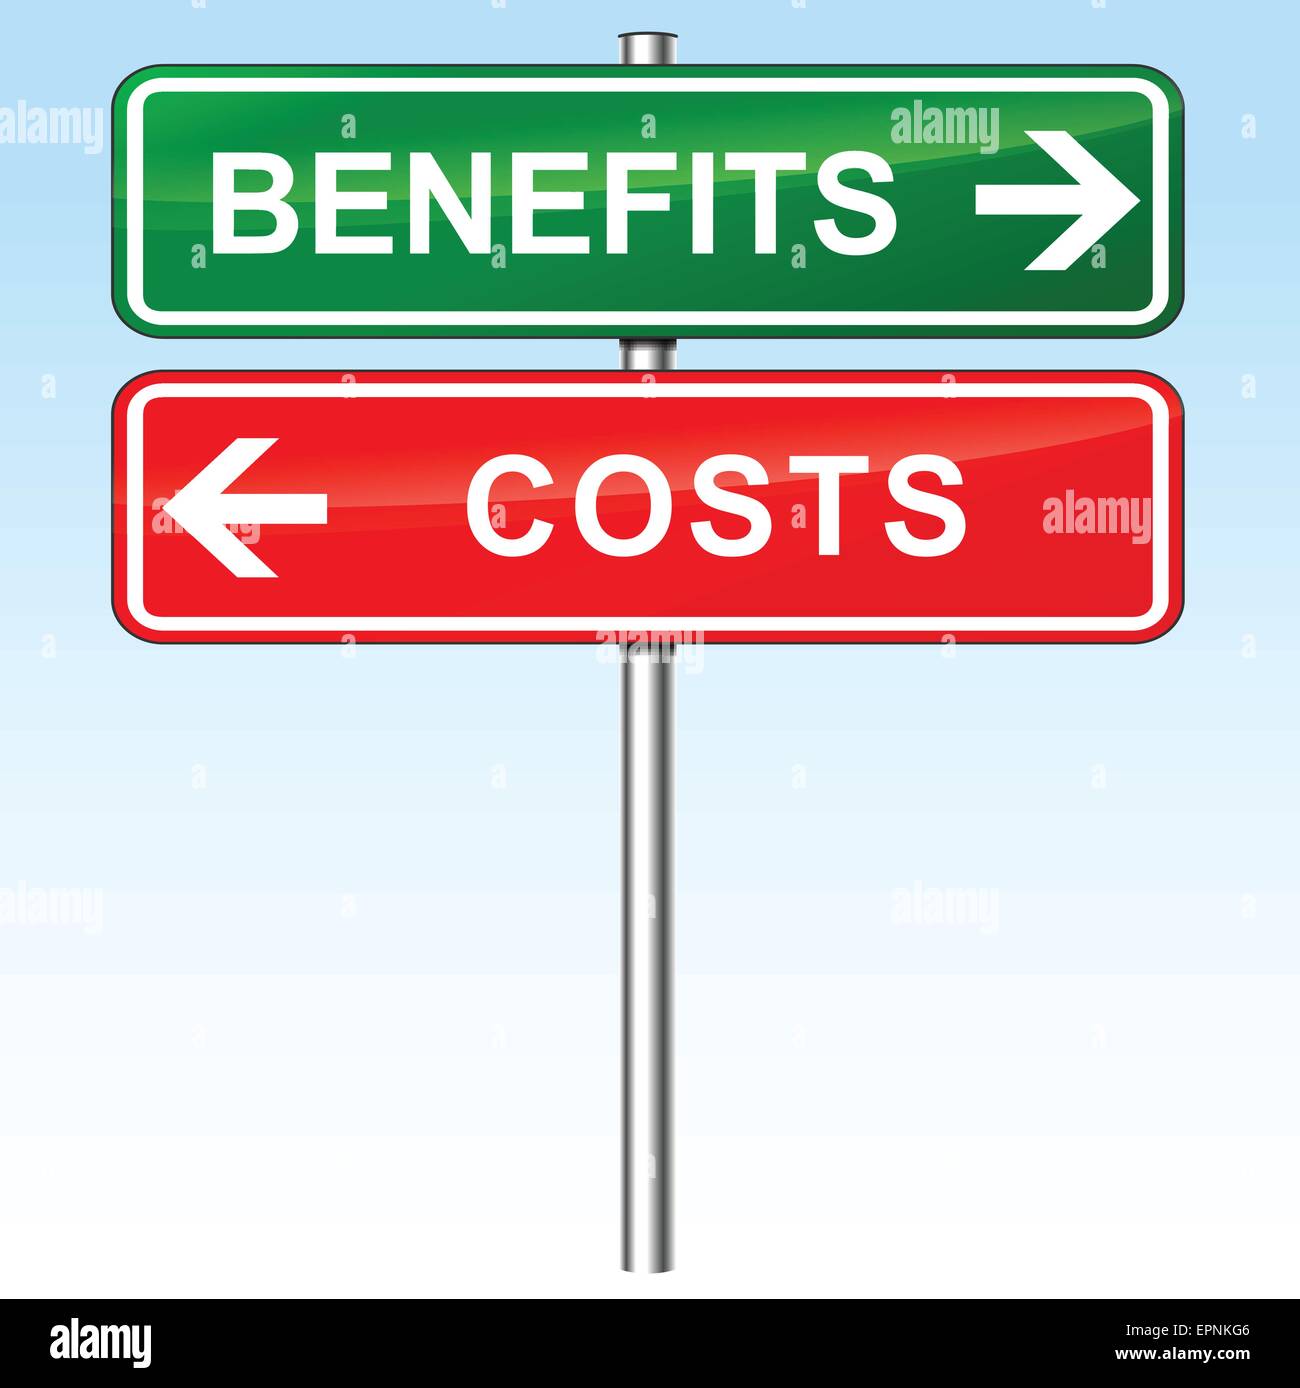 Ilustración de verde y rojo indicaciones para beneficios y costos Ilustración del Vector